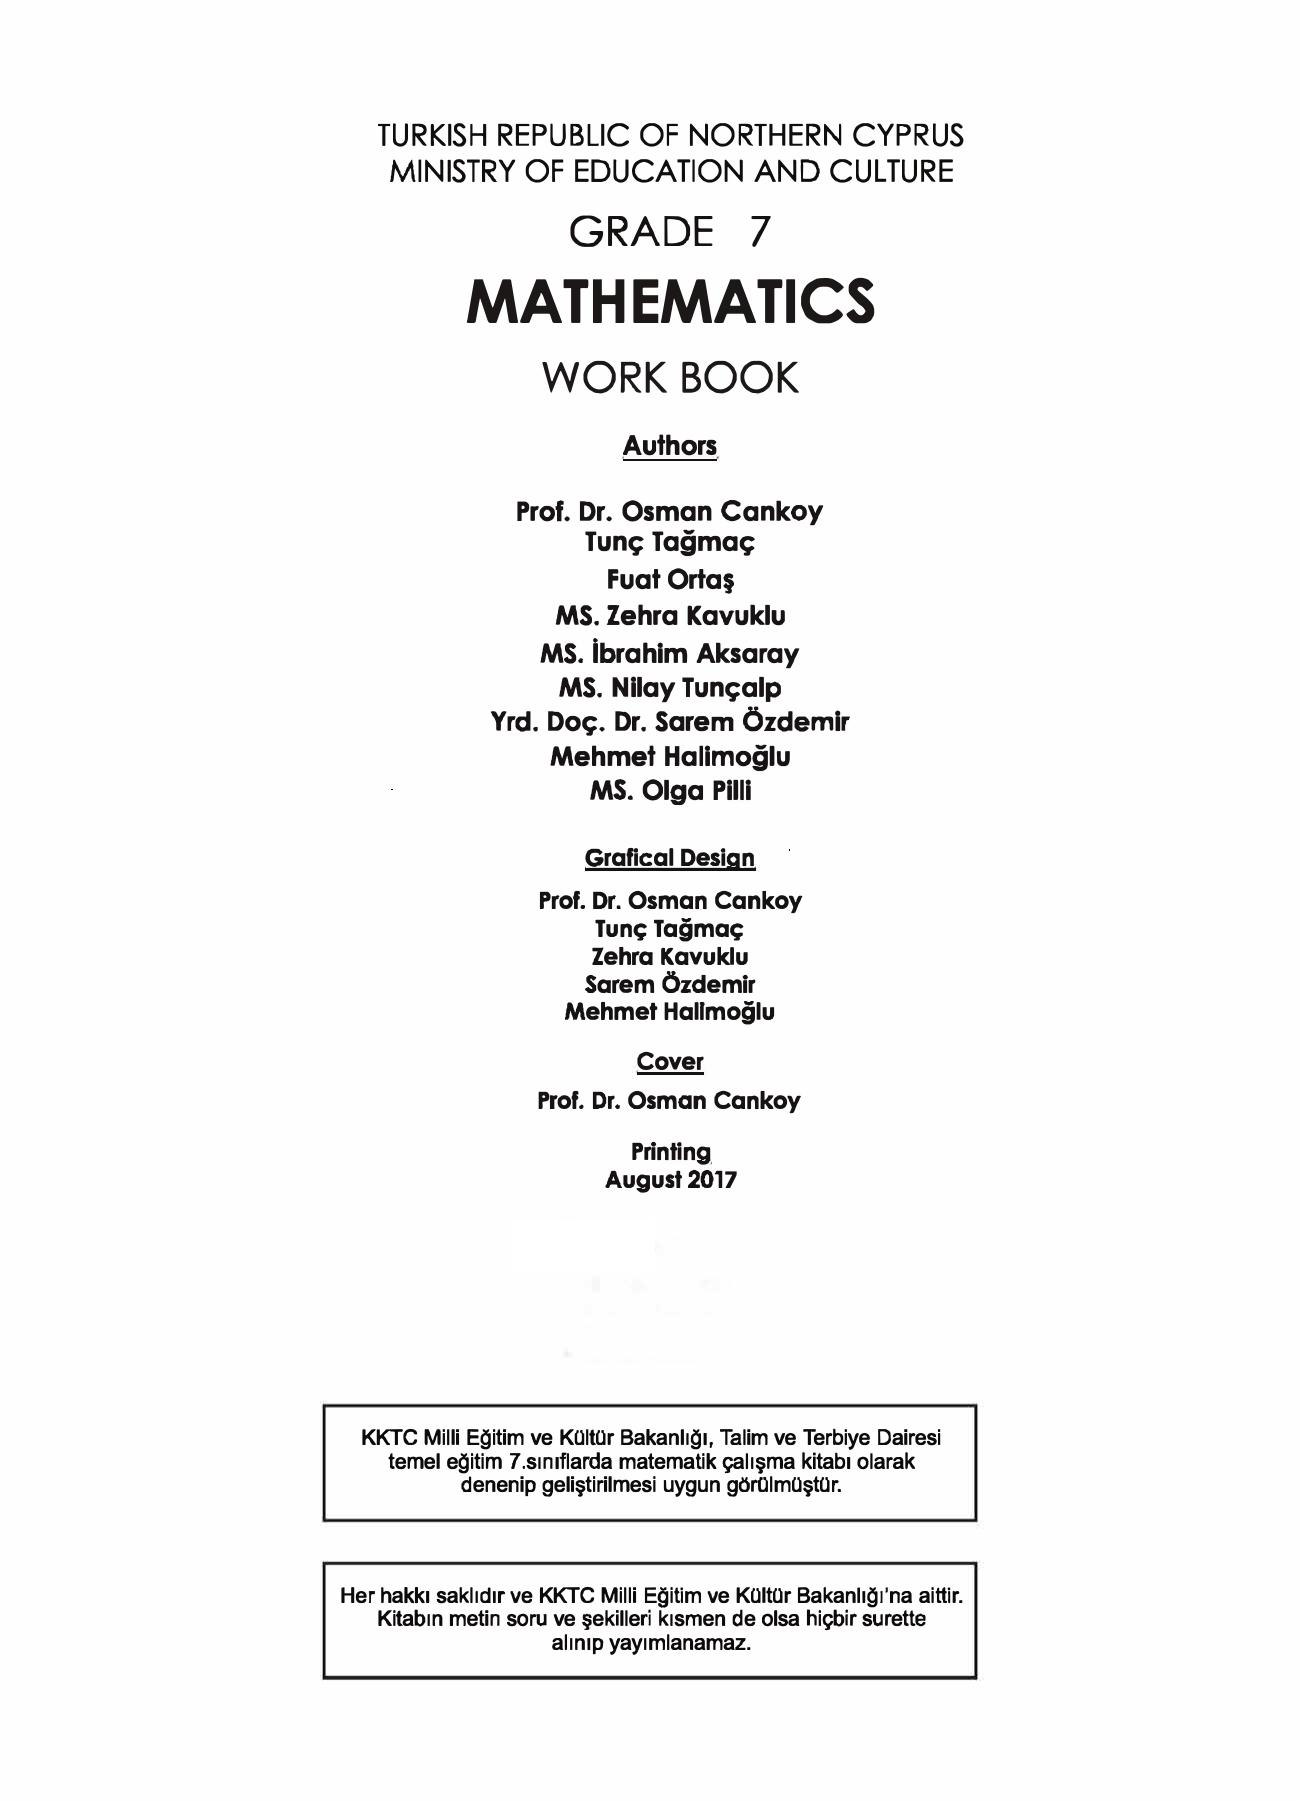 Mathematics. Grade 7. Work Book by coll